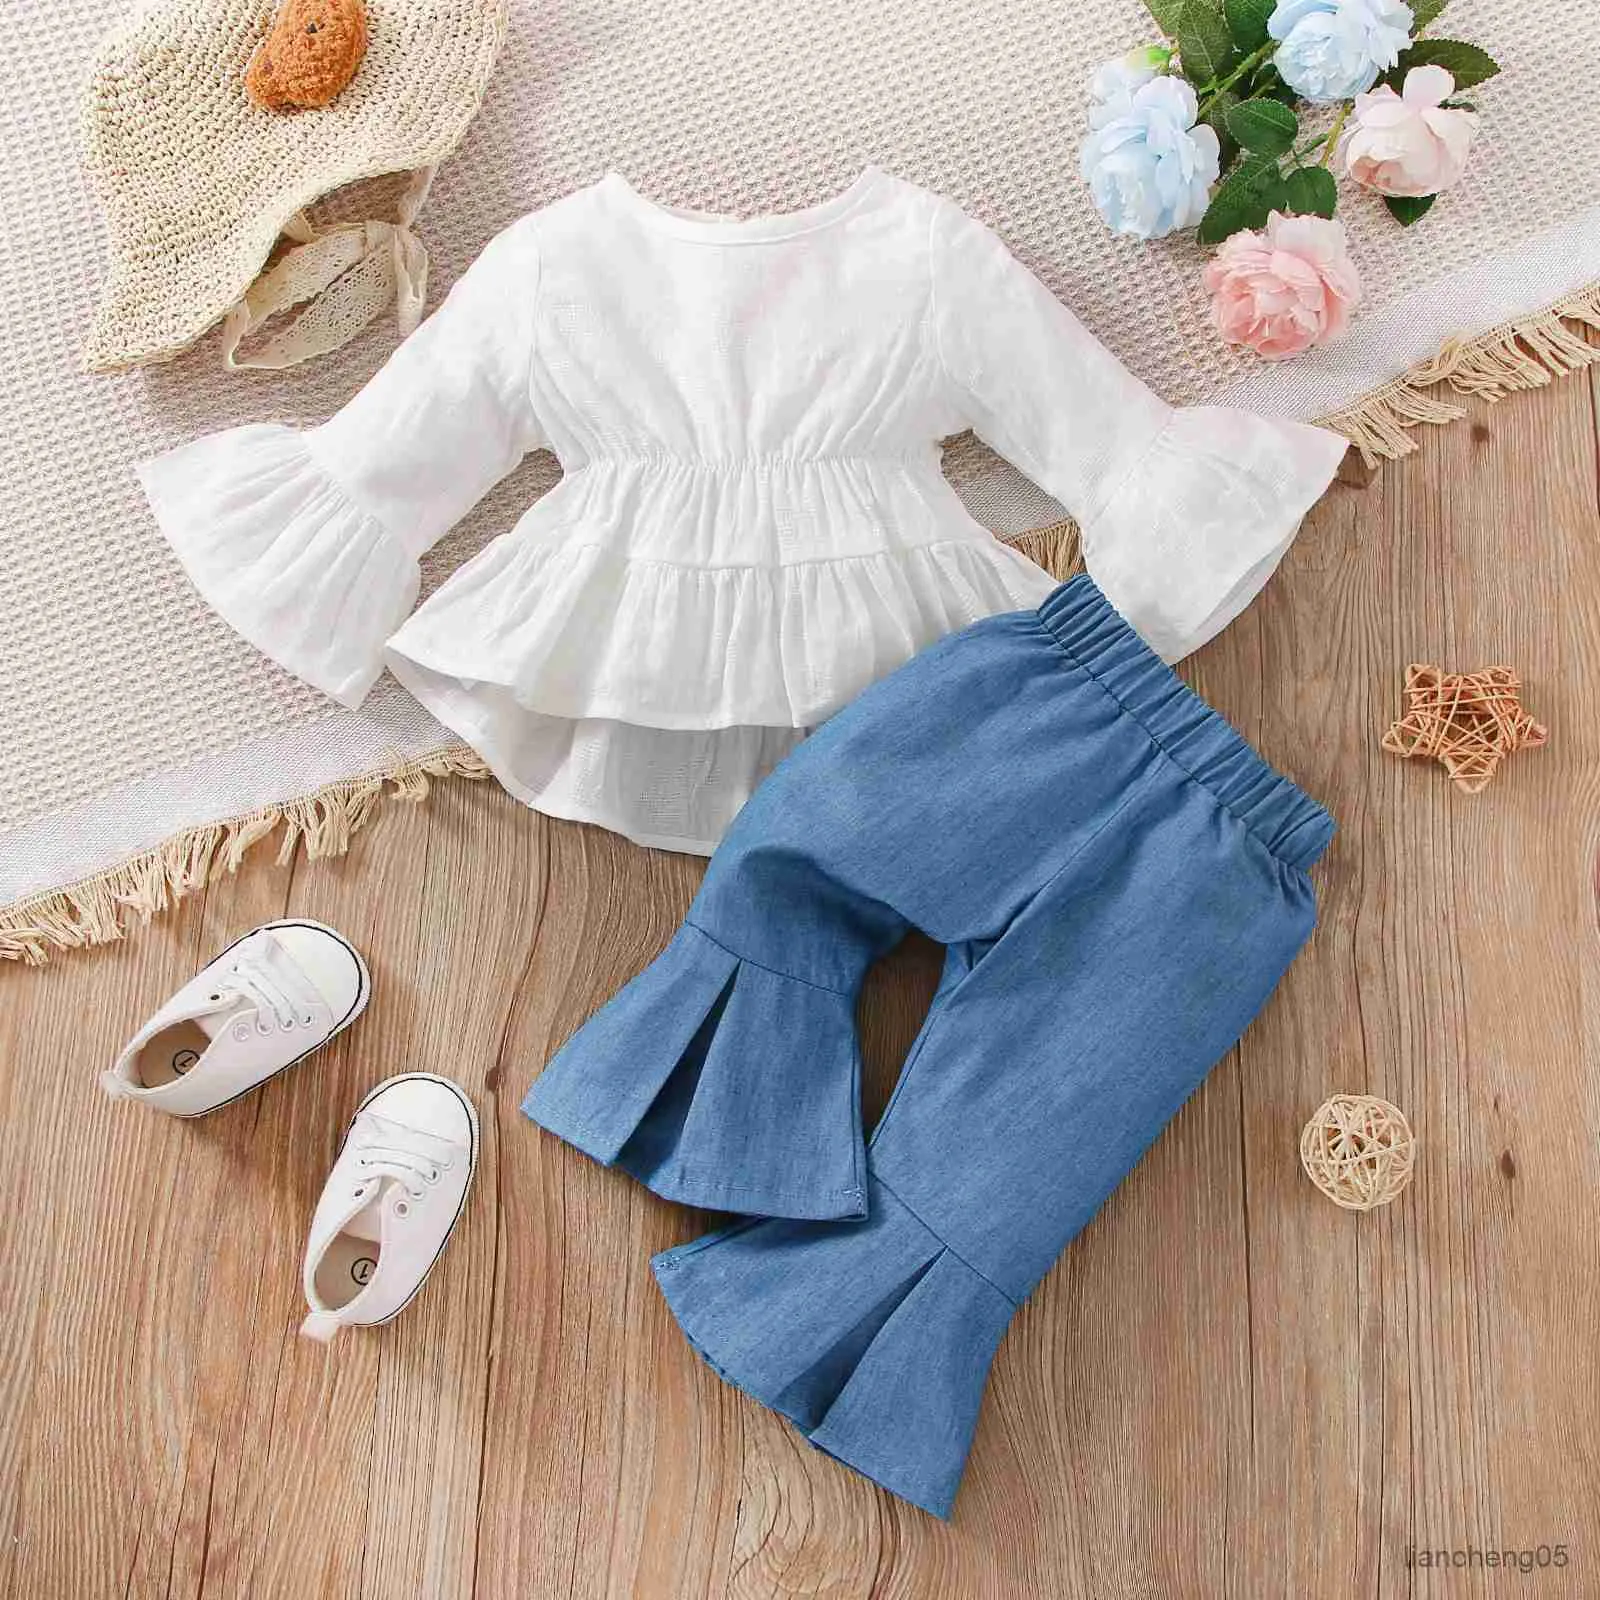 Zestawy odzieży nowonarodzone ubrania dla dziewczynki na wiosenne lato i jesień 2-częściowy biały długi rękawowy top niebieski Flearne dżinsy 2-częściowy zestaw